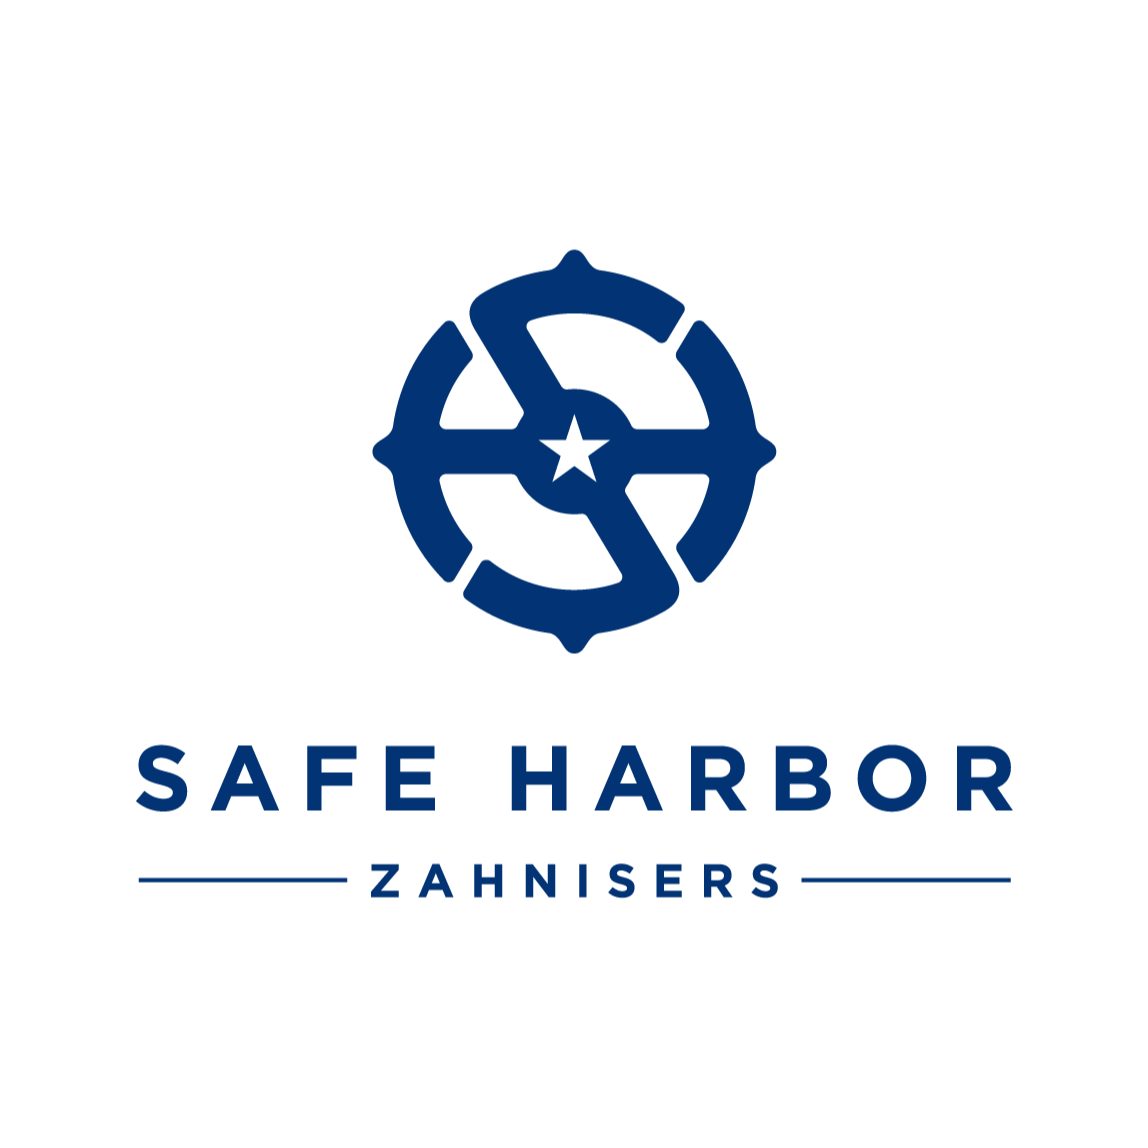 Safe Harbor Zahnisers